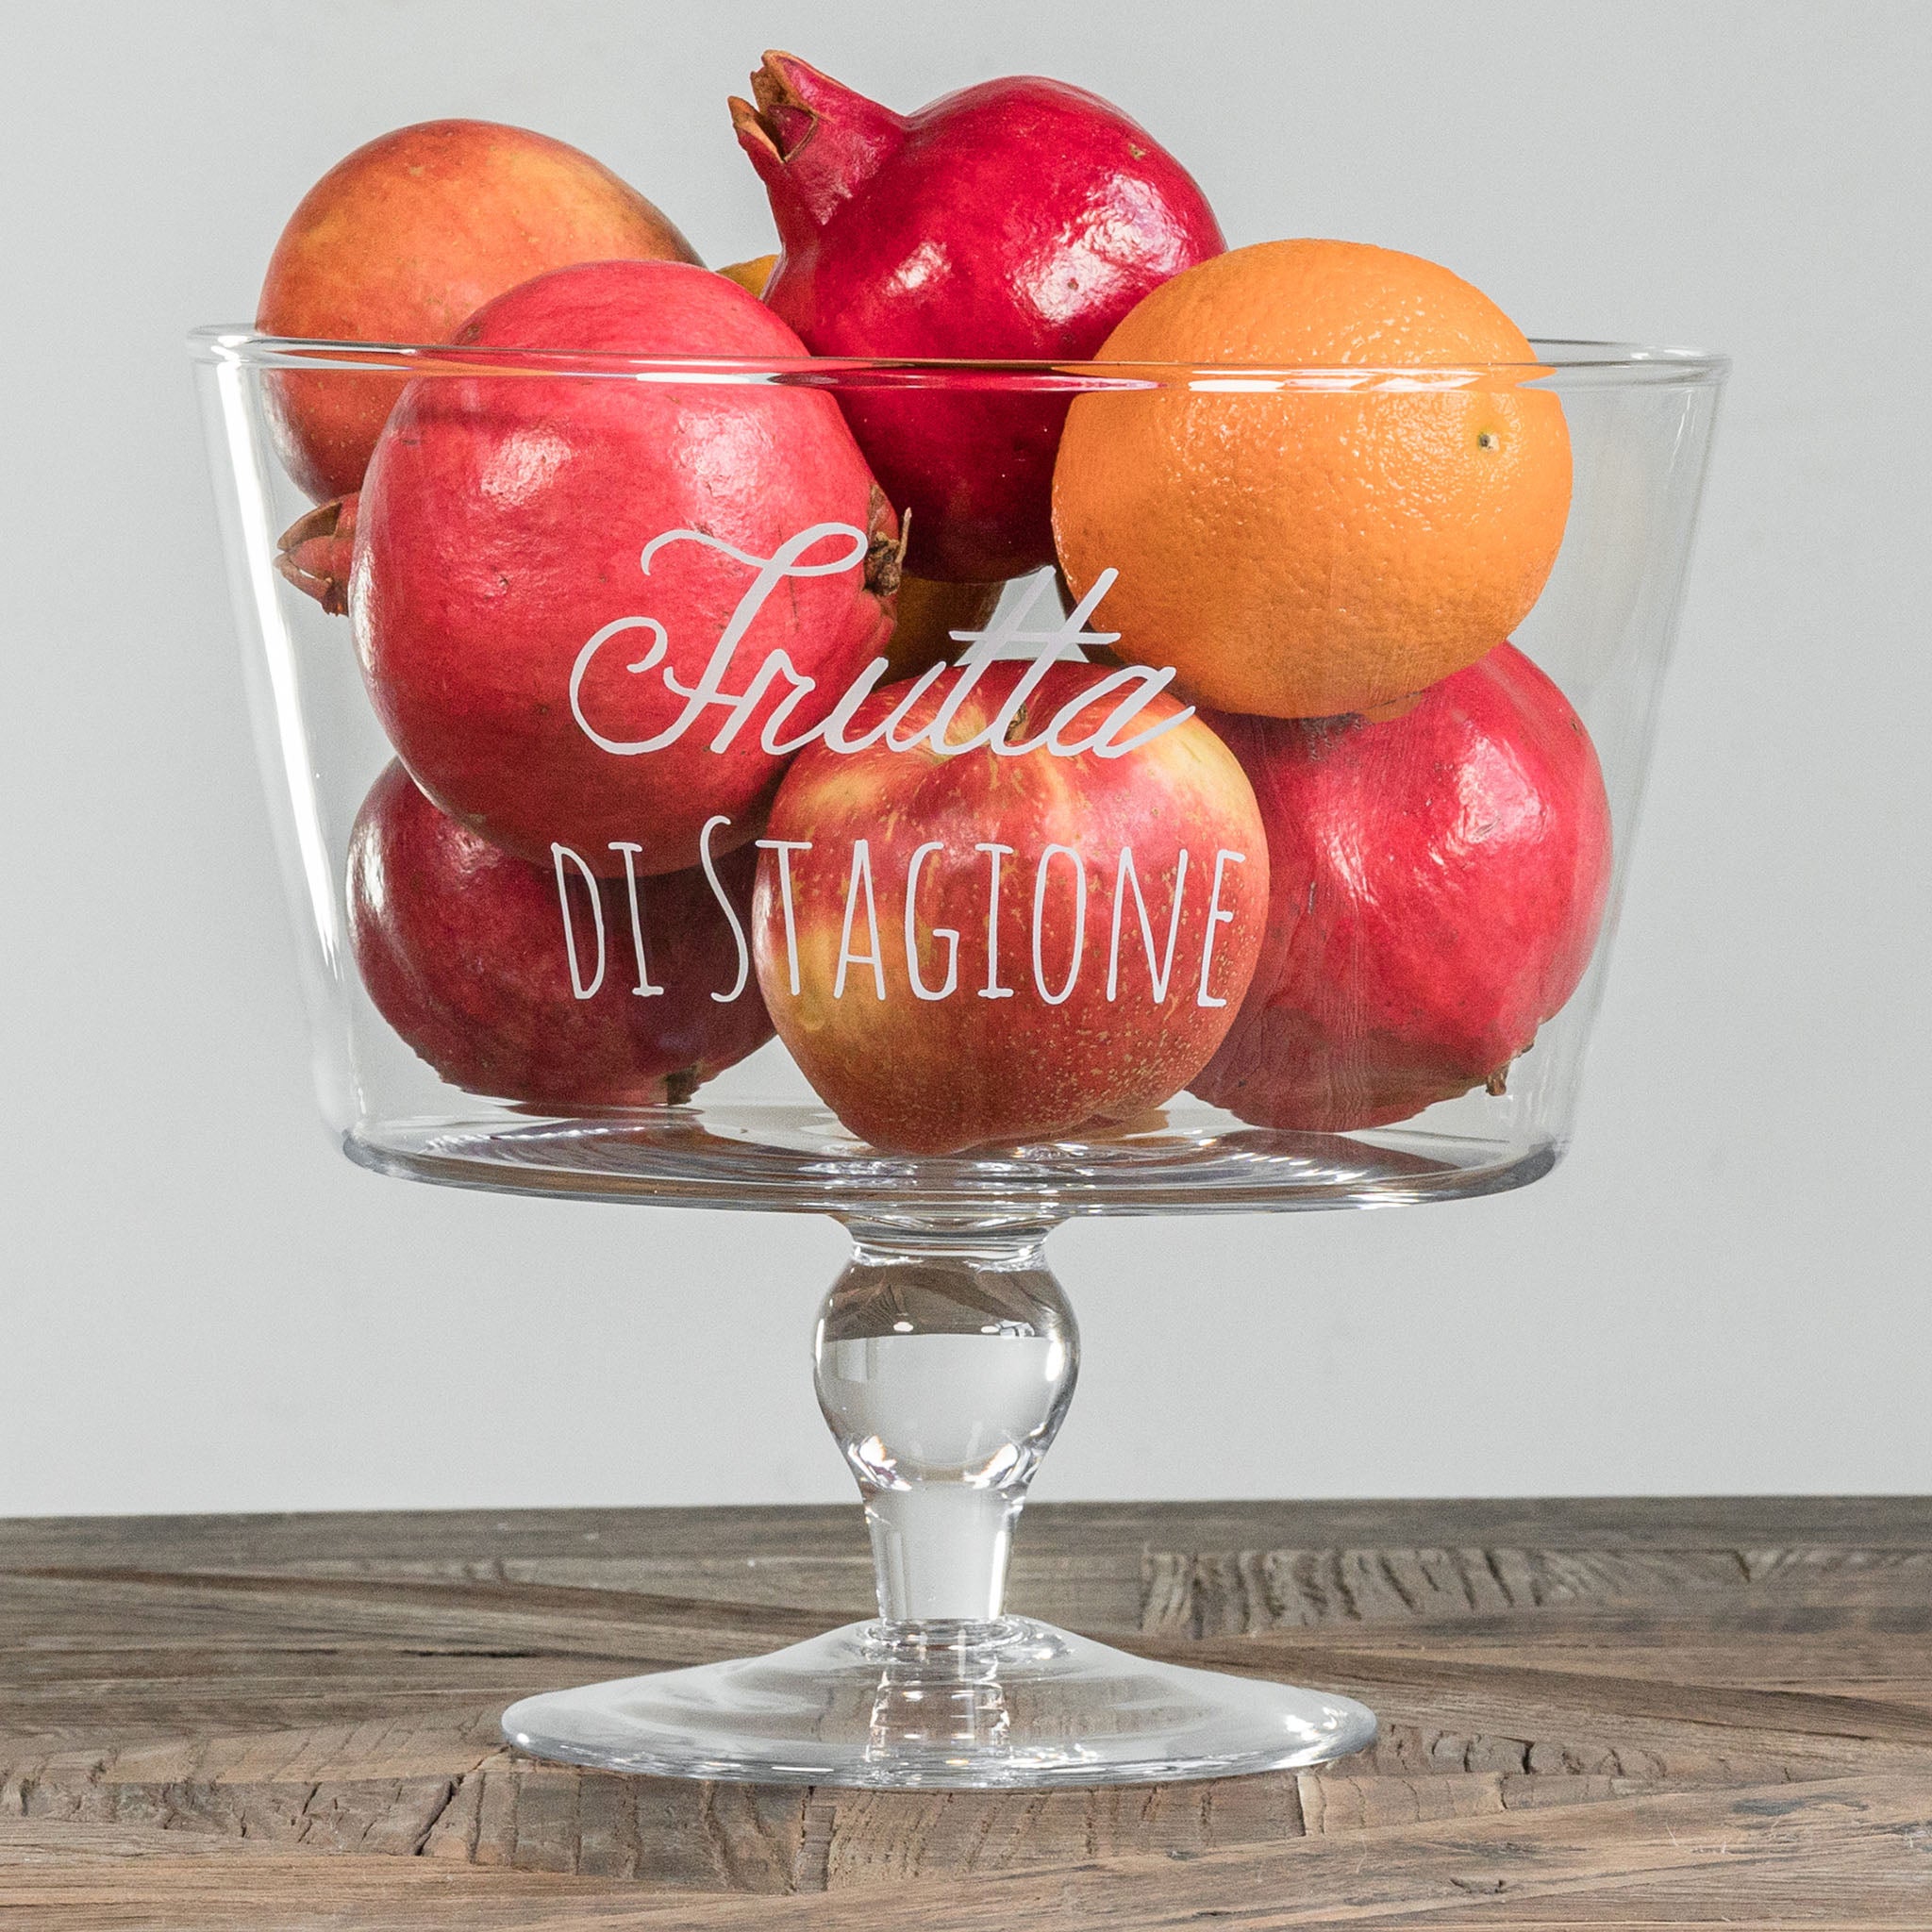 Porte-fruits en verre surélevé la décoration de fruits de saison